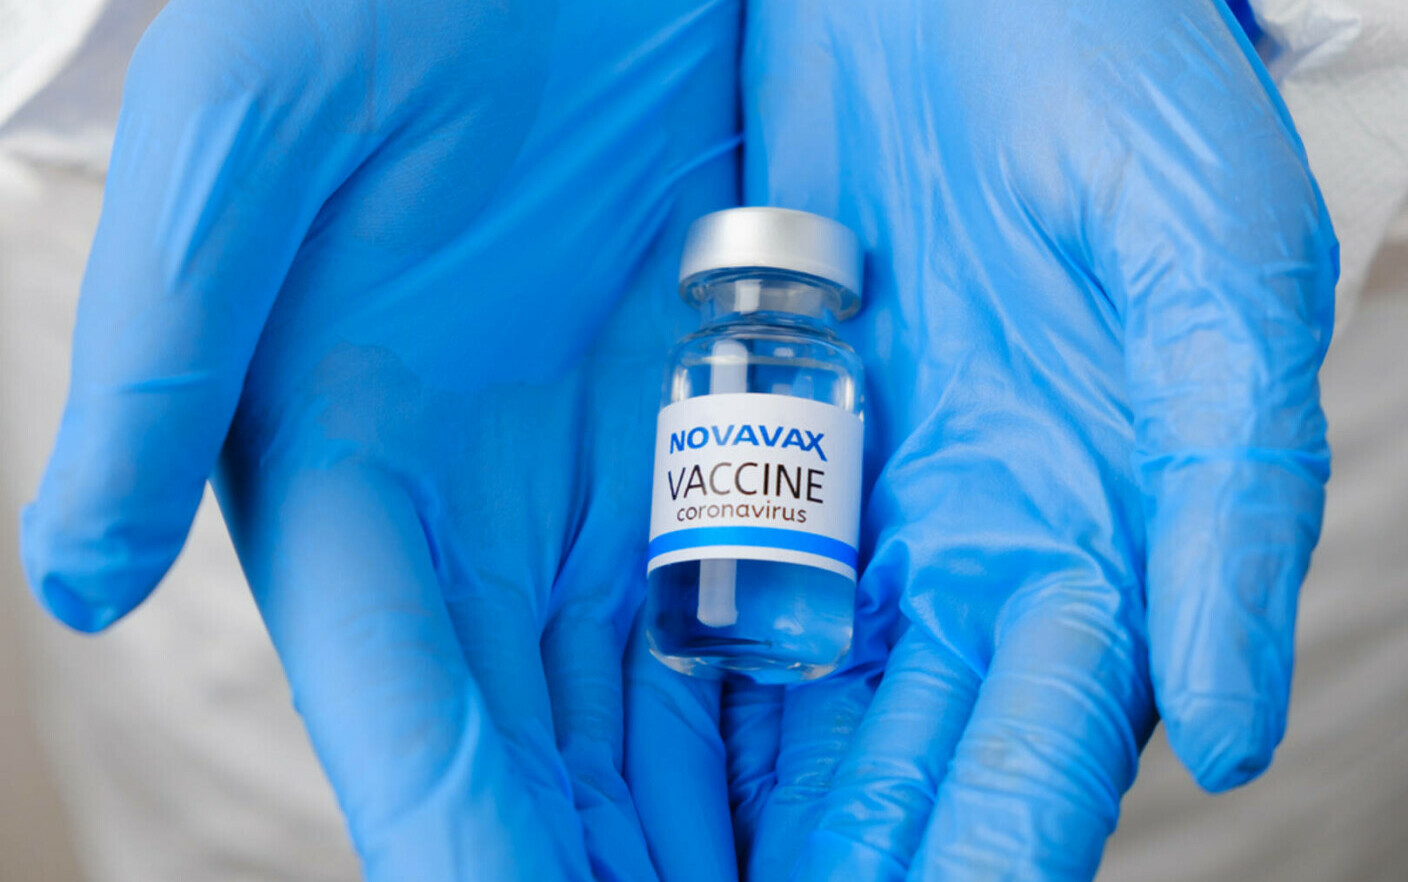 Risc de miocardită după vaccinarea cu Novavax, transmite FDA. Autoritatea se întrunește pentru autorizare pe piața din SUA